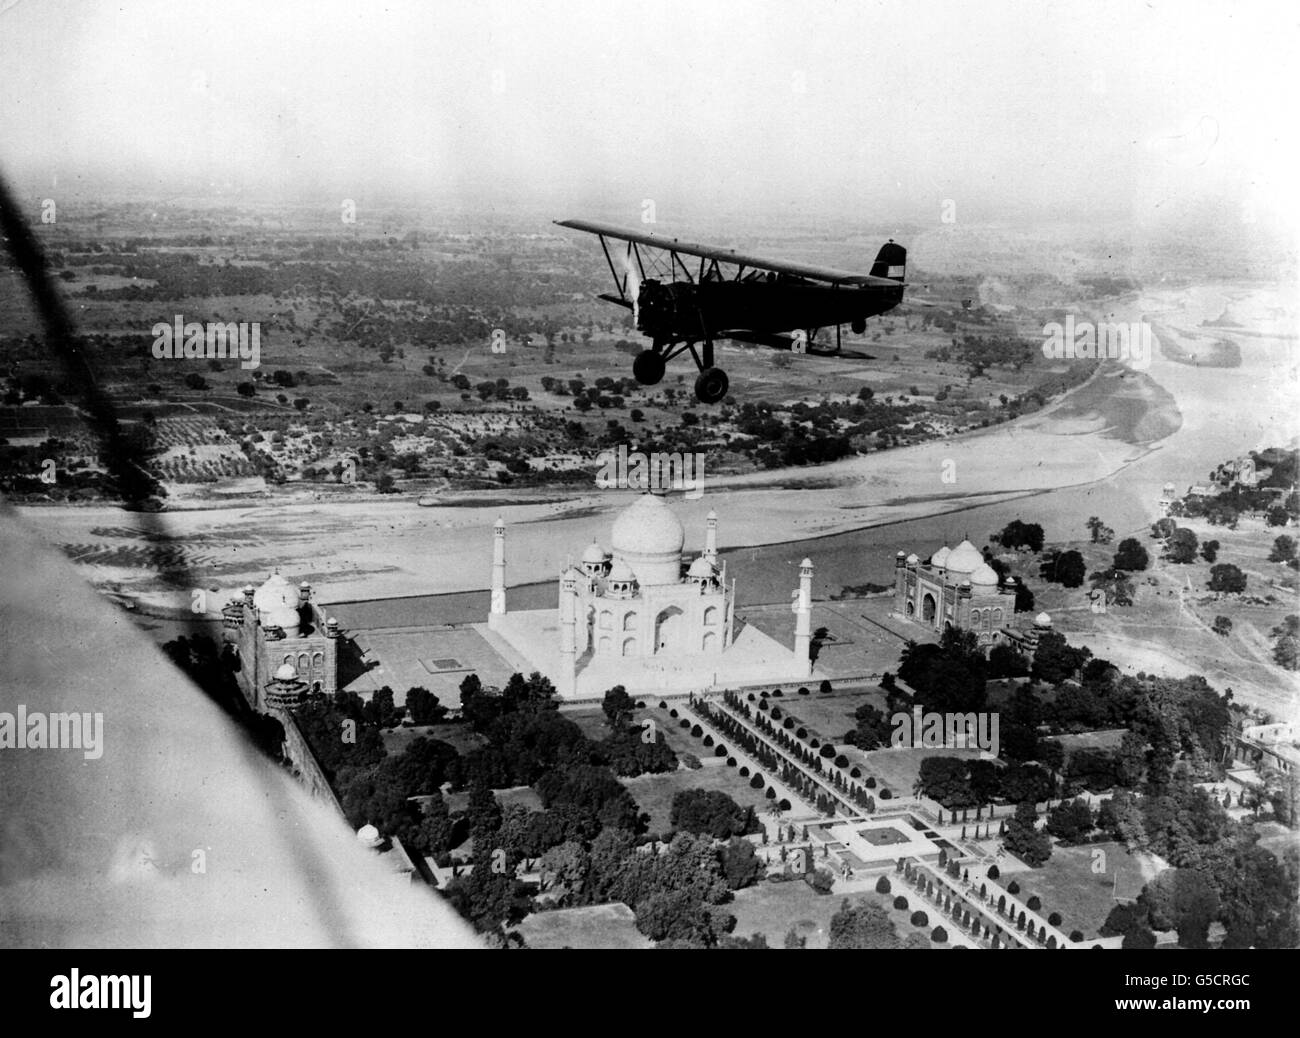 LE TAJ MAHAL 1932 : photo prise à partir d'un autre avion (de l'aile vers la gauche) montrant un avion américain survolant le célèbre Taj Mahal à Agra, dans le nord de l'Inde. Dans l'avion, Richard Halliburton, l'auteur, et Moye Stephens, qui font un voyage lent du monde par avion. Banque D'Images